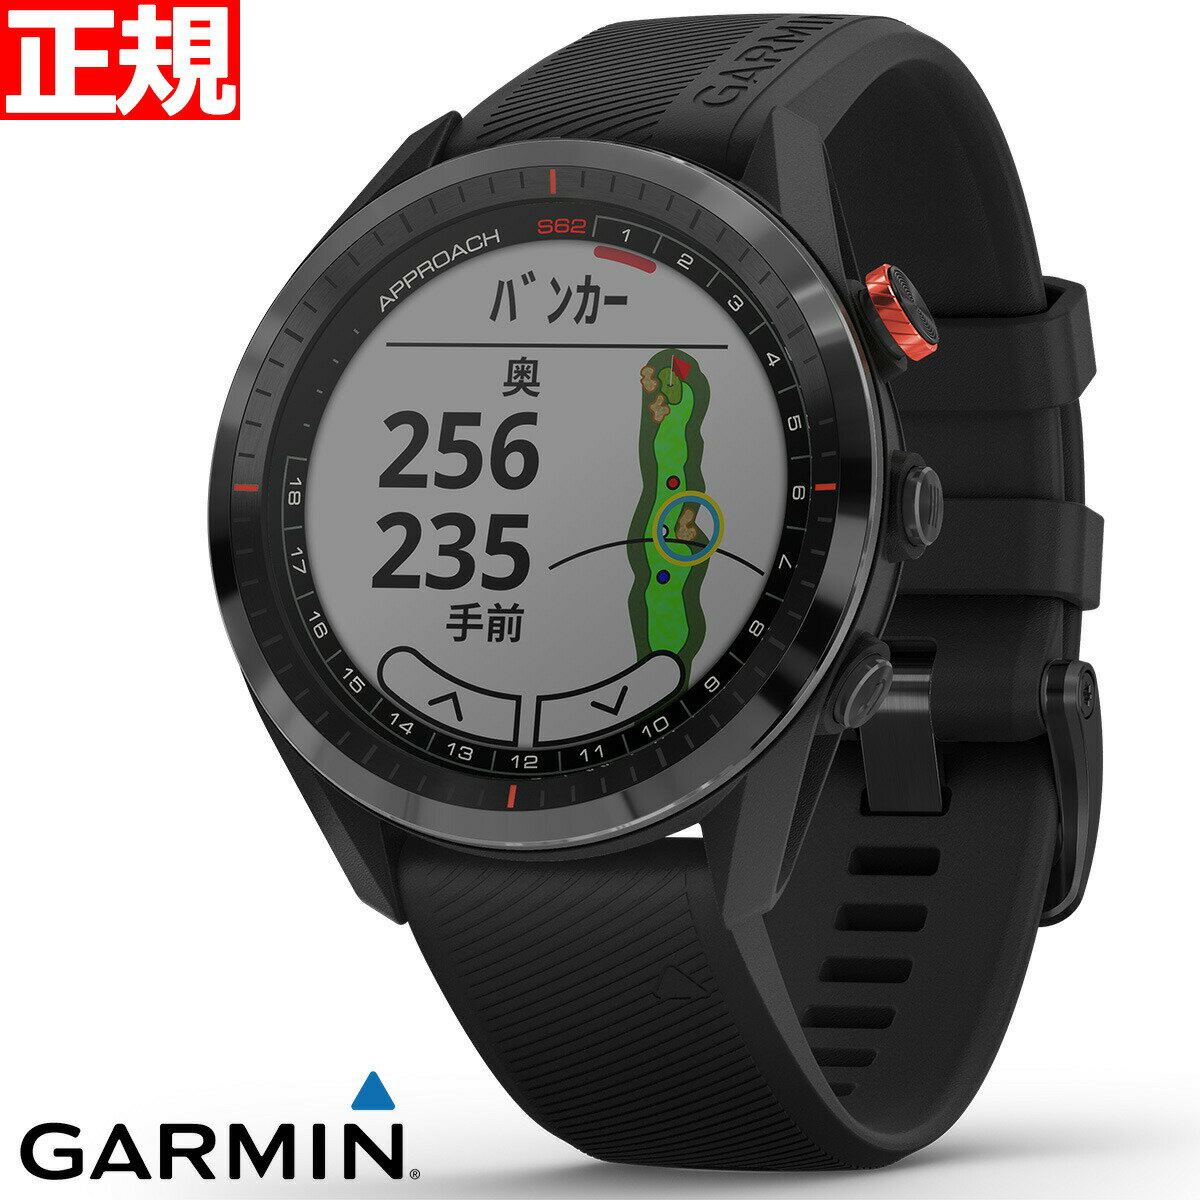 【24回分割手数料無料 】ガーミン GARMIN Approach S62 アプローチ S62 GPS ゴルフウォッチ スマートウォッチ ウェアラブル 腕時計 メンズ レディース ブラック 010-02200-20